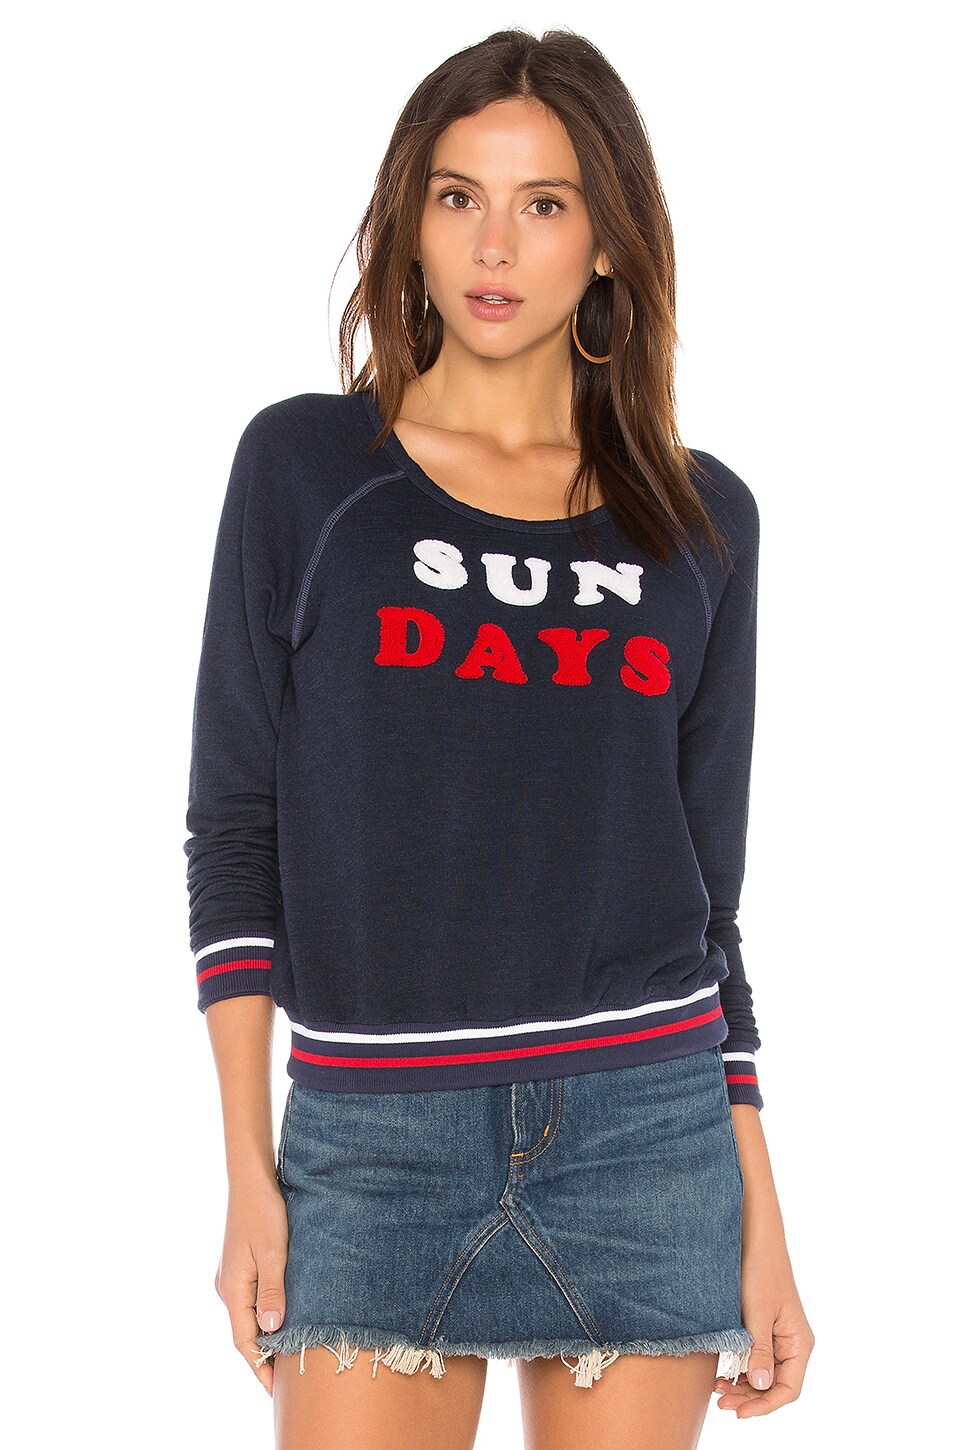 Sun Days Sweater